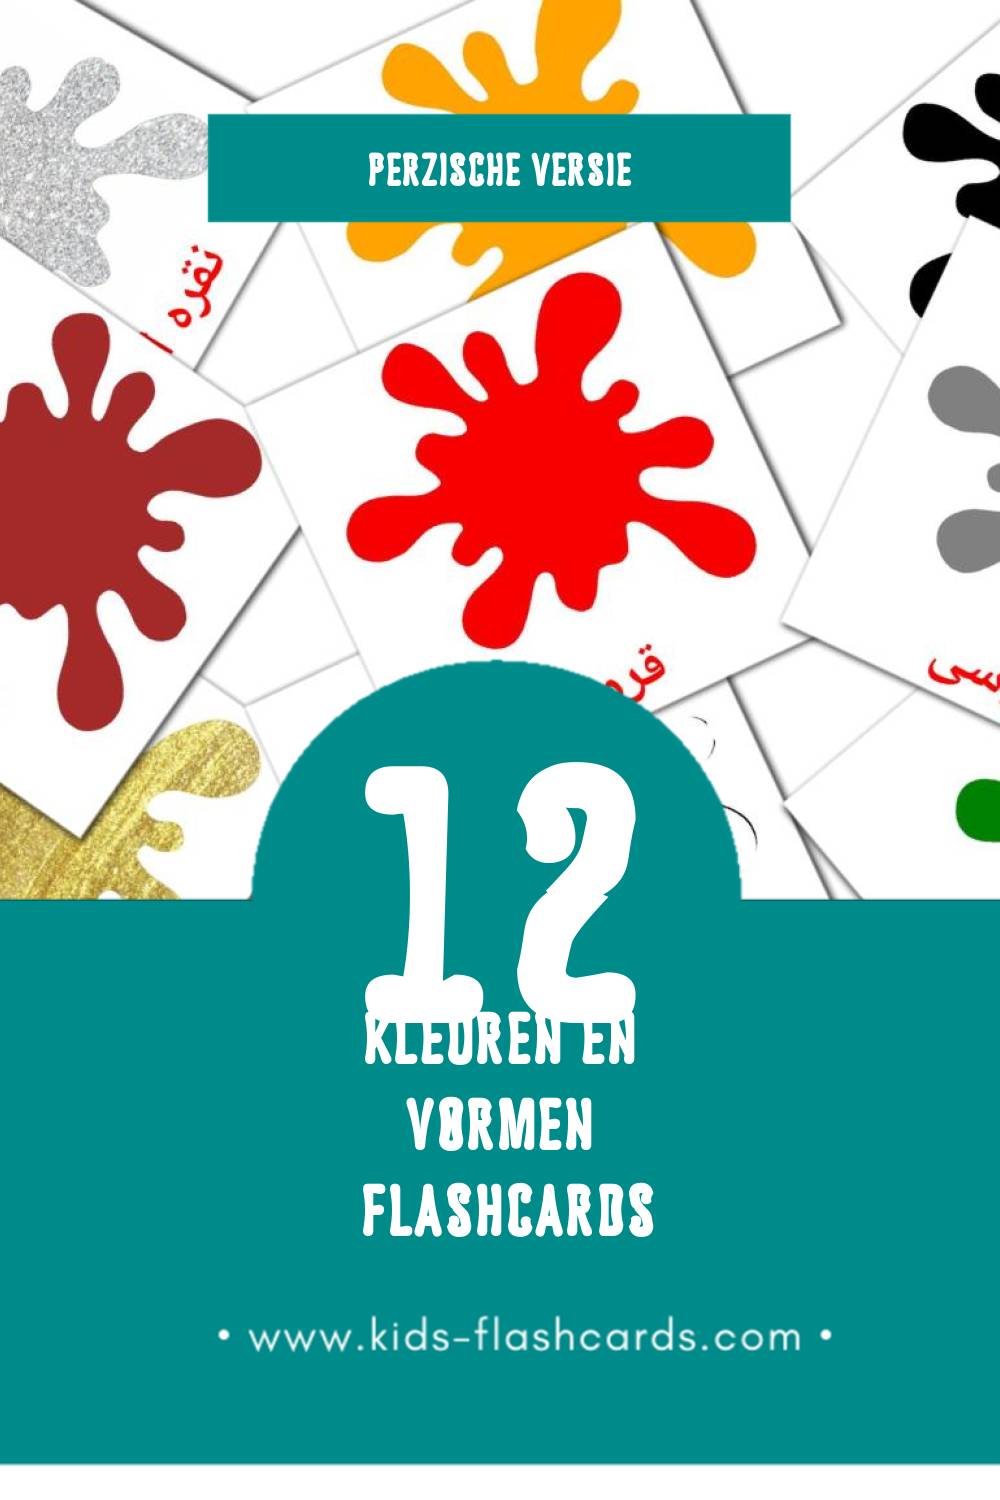 Visuele رنگ ها و اشکال Flashcards voor Kleuters (12 kaarten in het Perzisch)